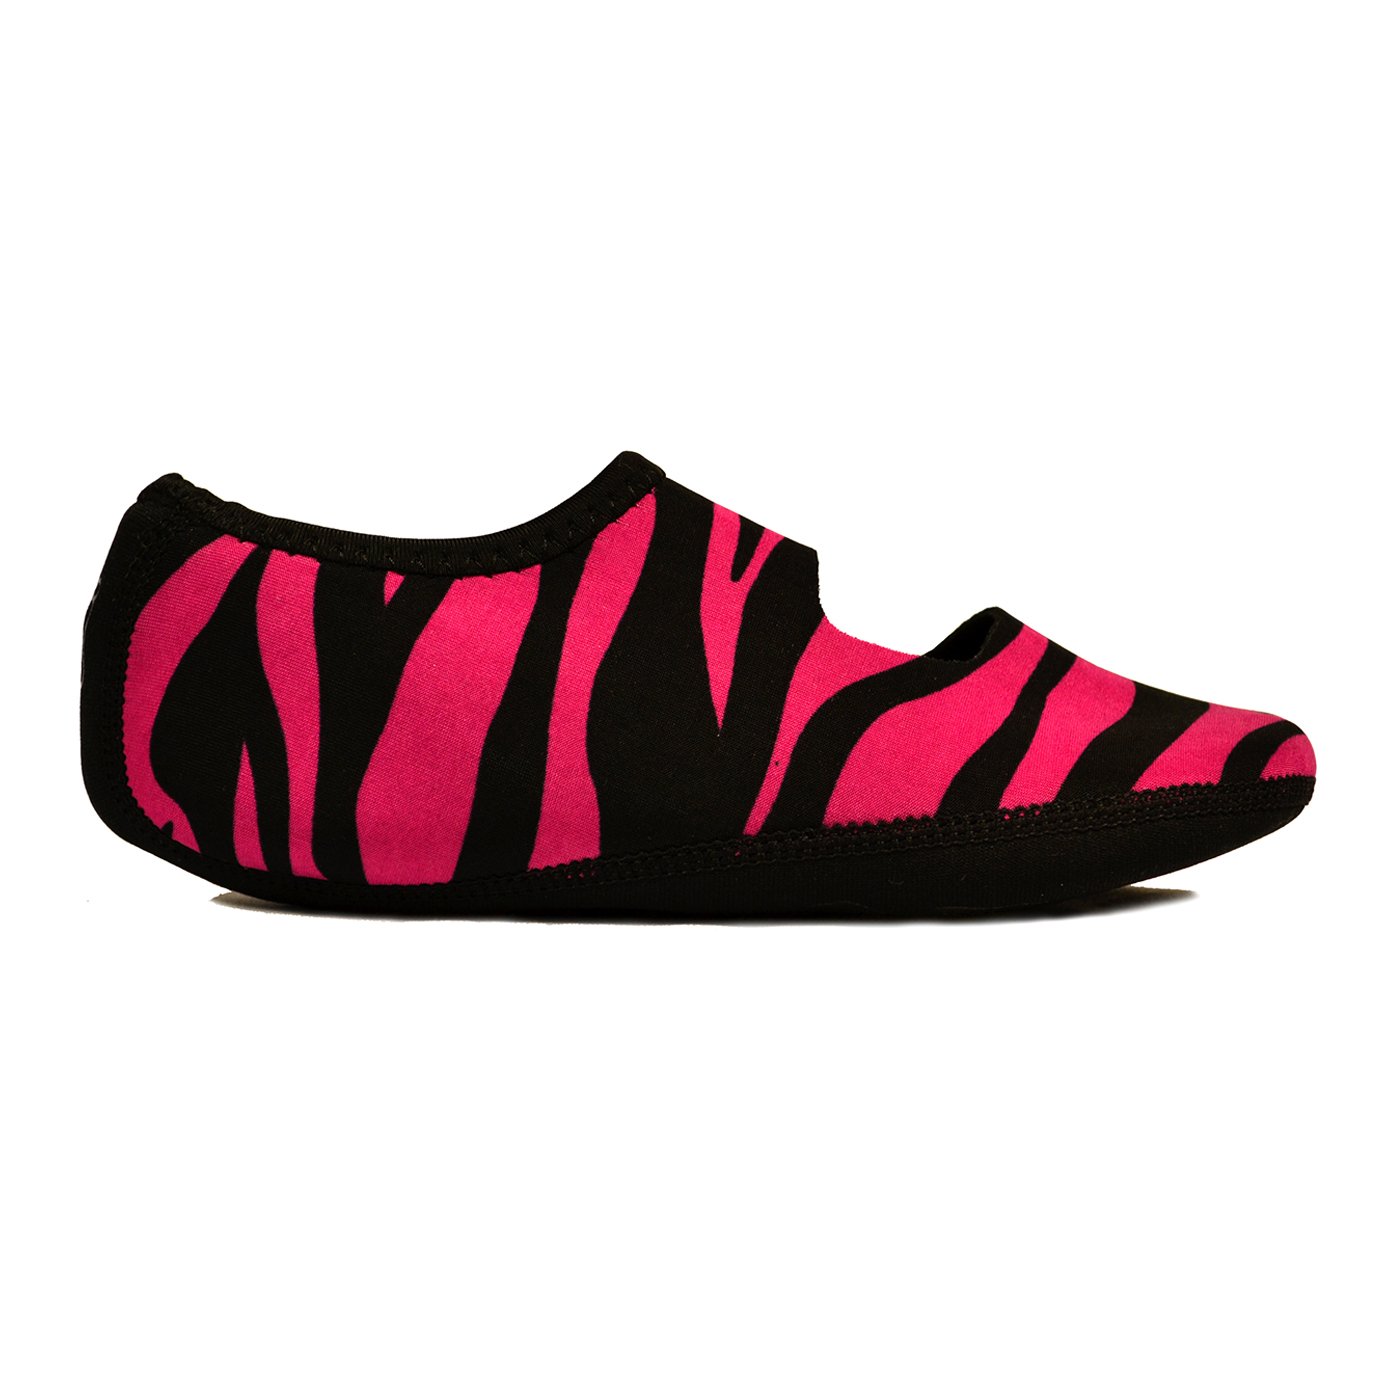 Nufoot Women's Mary Jane Slipper, Pink Zebra, Medium